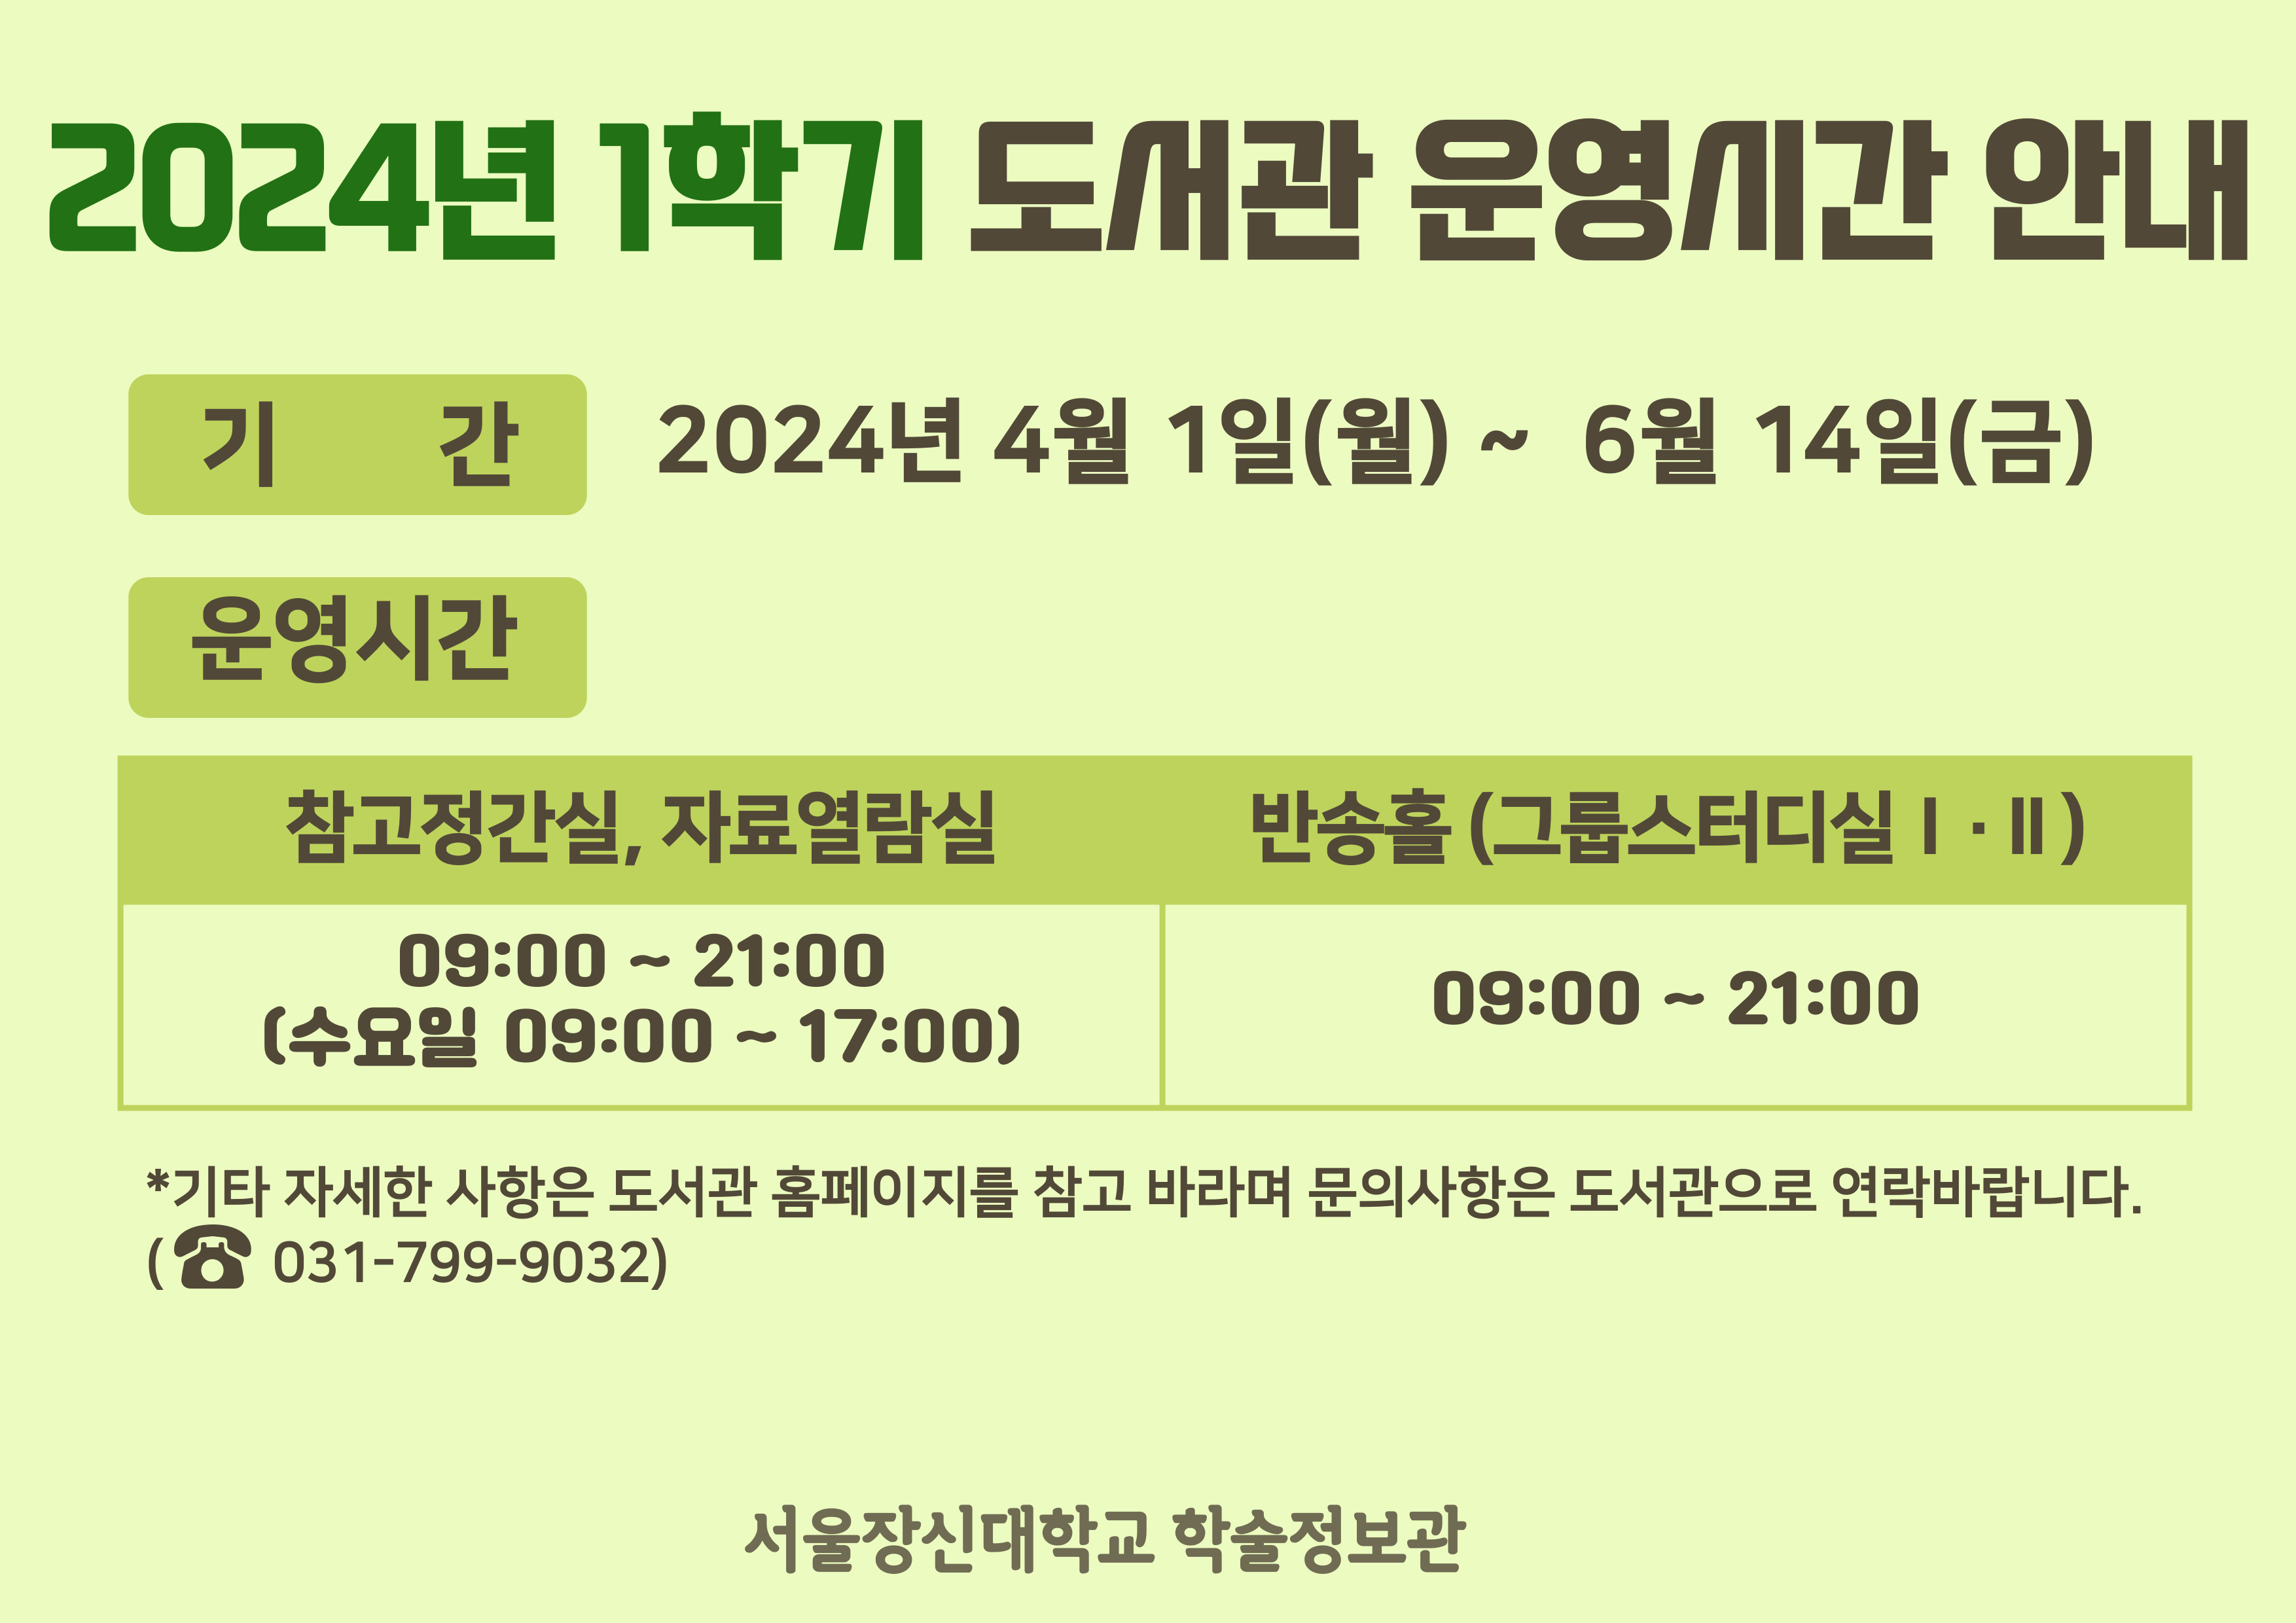 2024_1-도서관-운영시간-변경-안내.jpg